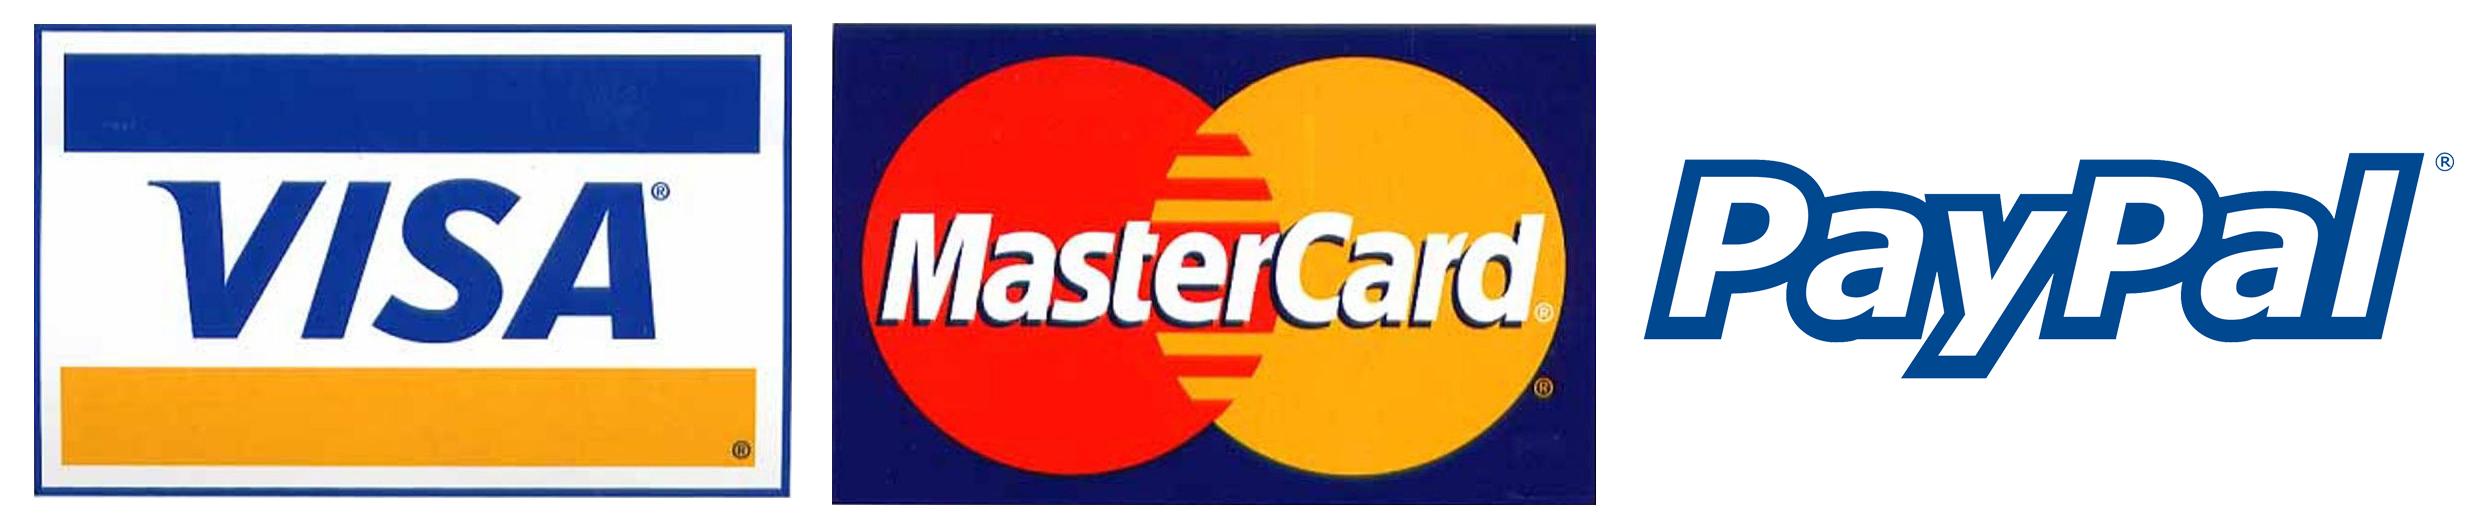 Visa Mastercard and Paypal